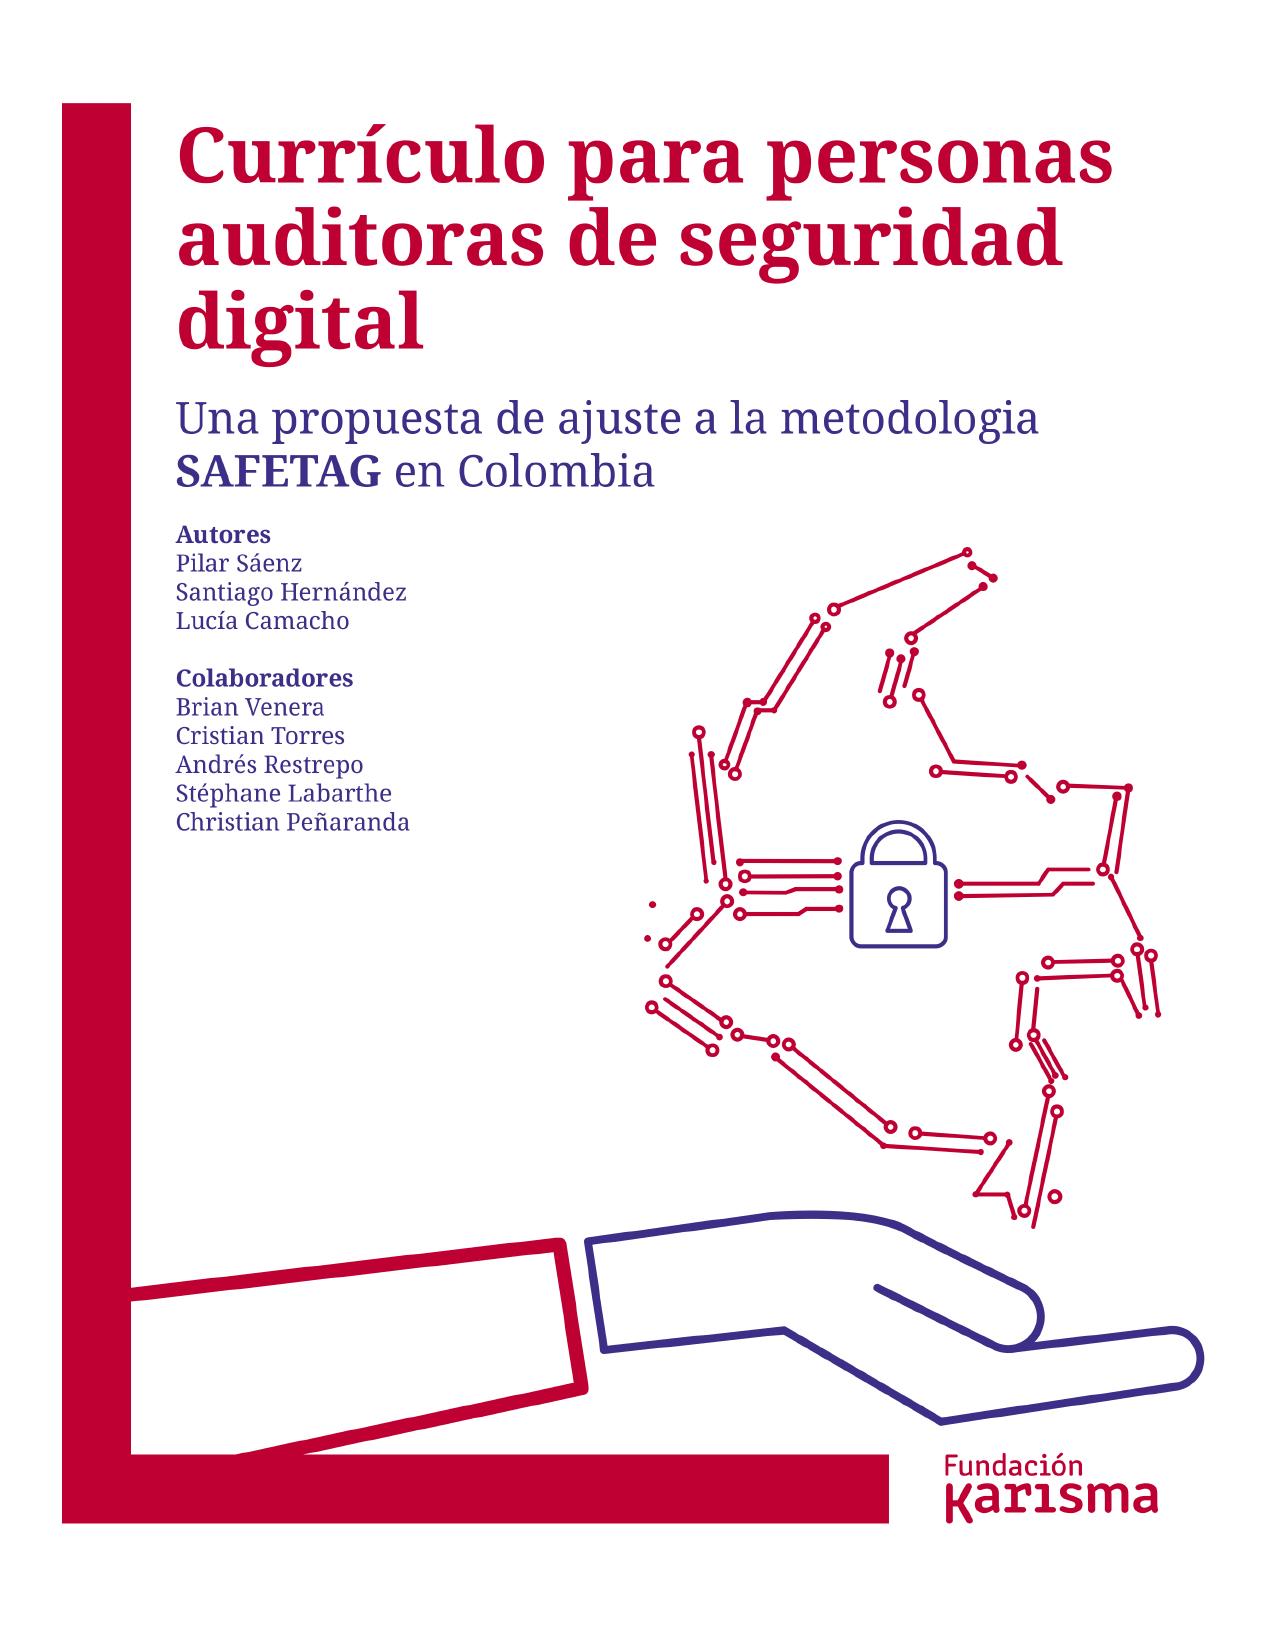 Curriculo para auditores seguridad digital :: Una propuesta de ajustes a la metodología SAFETAG en Colombia